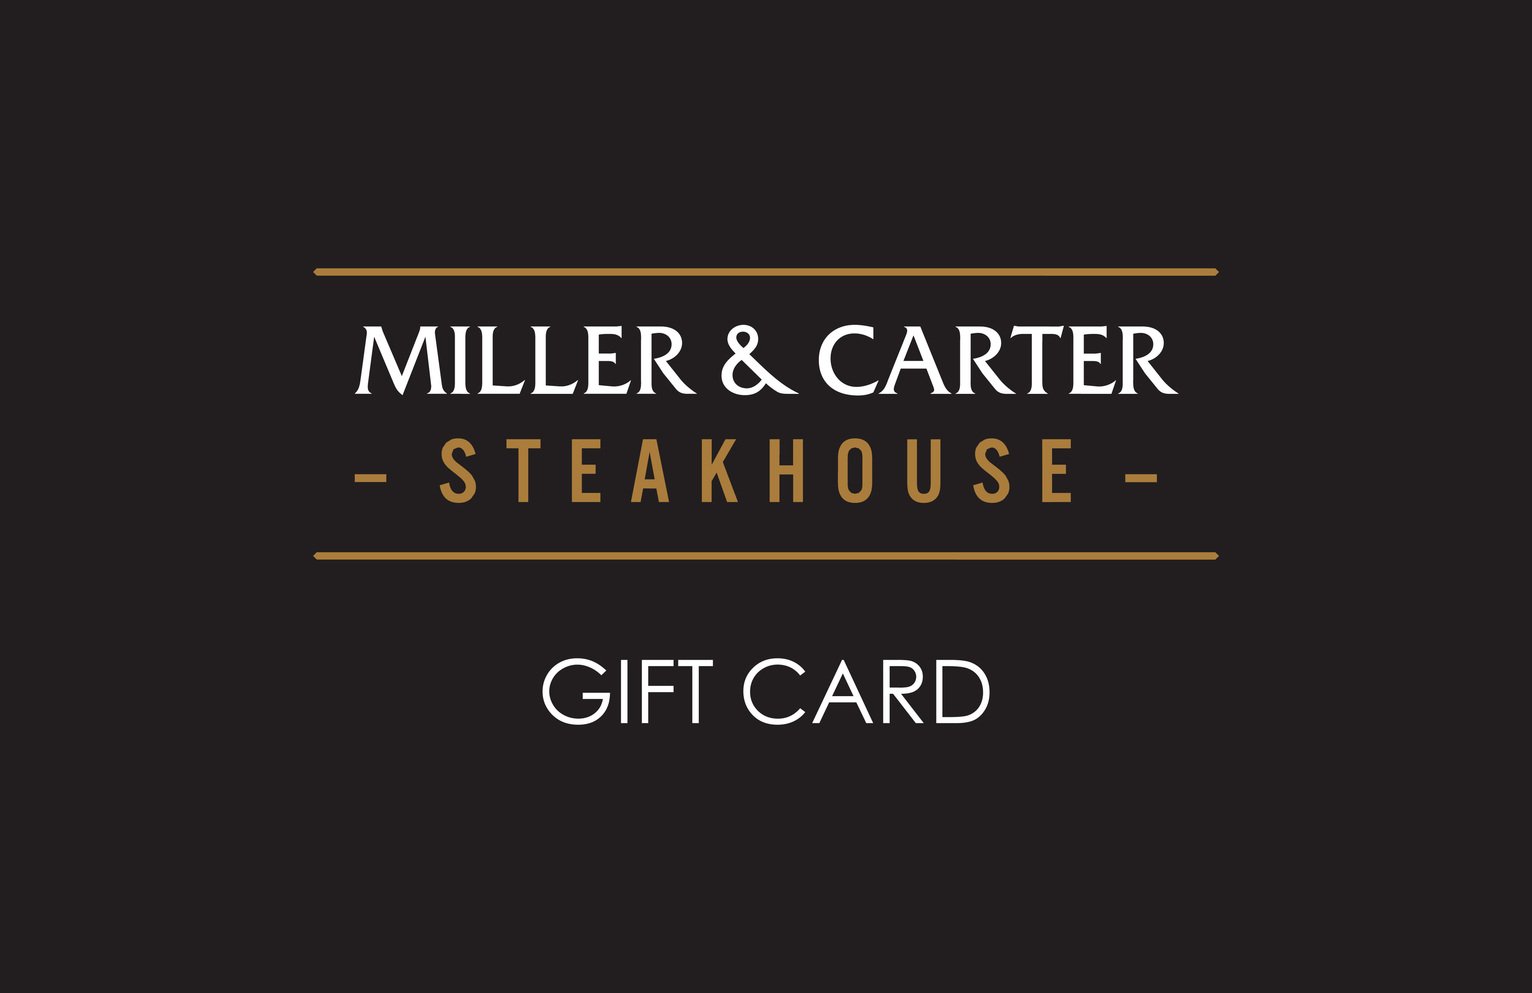 Miller & Carter 50 GBP Gift Card